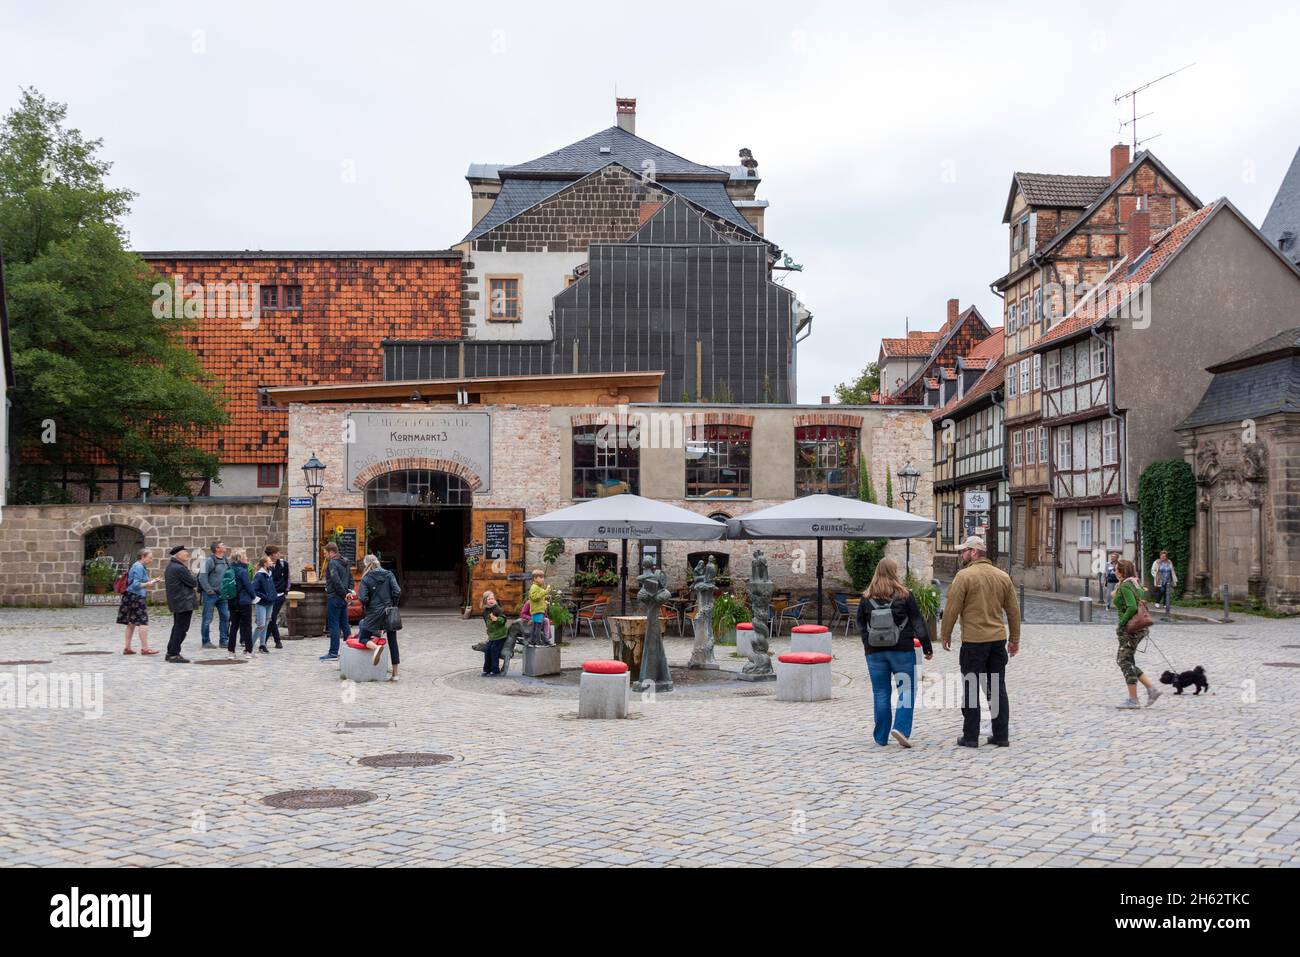 deutschland, sachsen-anhalt, quedlinburg, Touristen stehen an einem Brunnen auf dem kornmarkt, dahinter sieht man das restaurant kornmarkt 3 Stockfoto